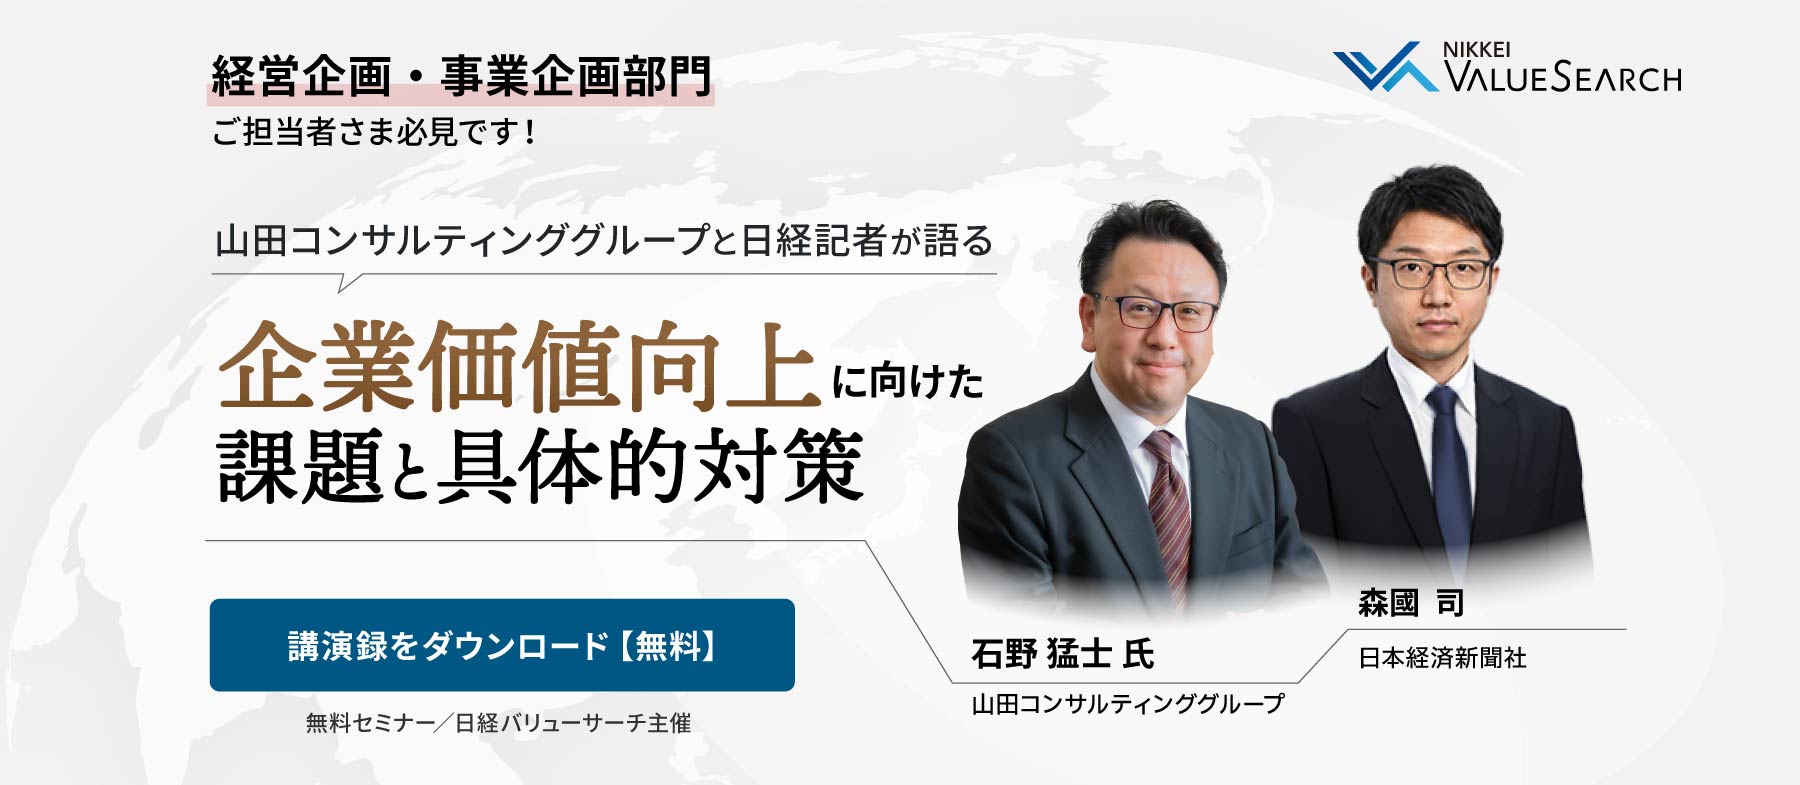 山田コンサルティンググループと日経記者が語る企業価値向上に向けた課題と具体的対策 (セミナー・レポート)